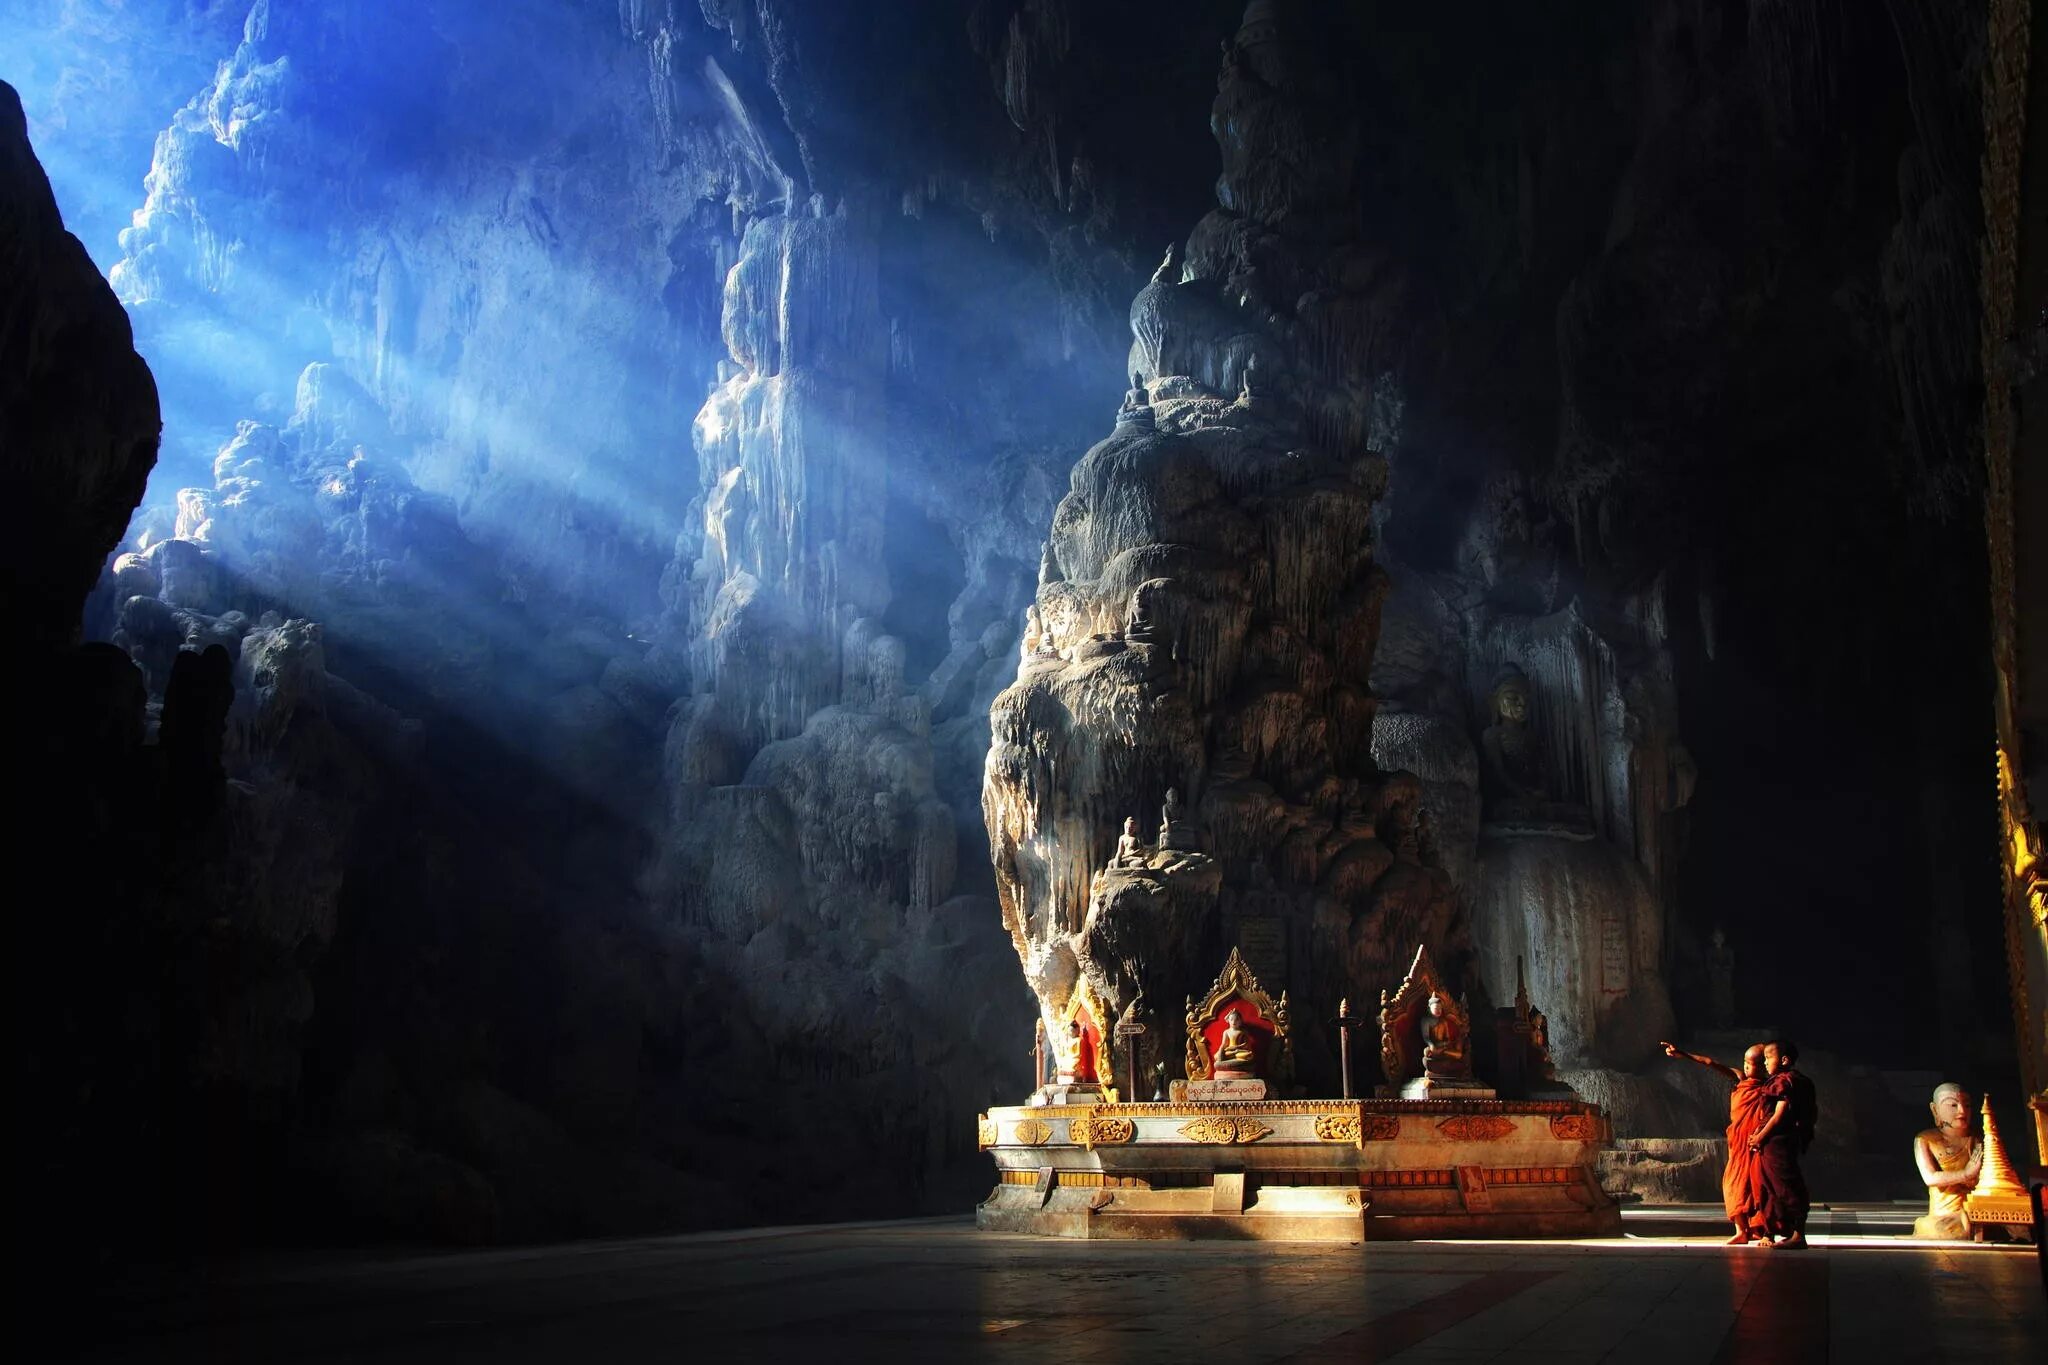 Пещеры будды. Пещера Kyaut SAE В Мьянмар. Пещера Кьяут САЕ, Мьянма. Буддистский храм в пещере Малайзии. Пещера Dongzhong.